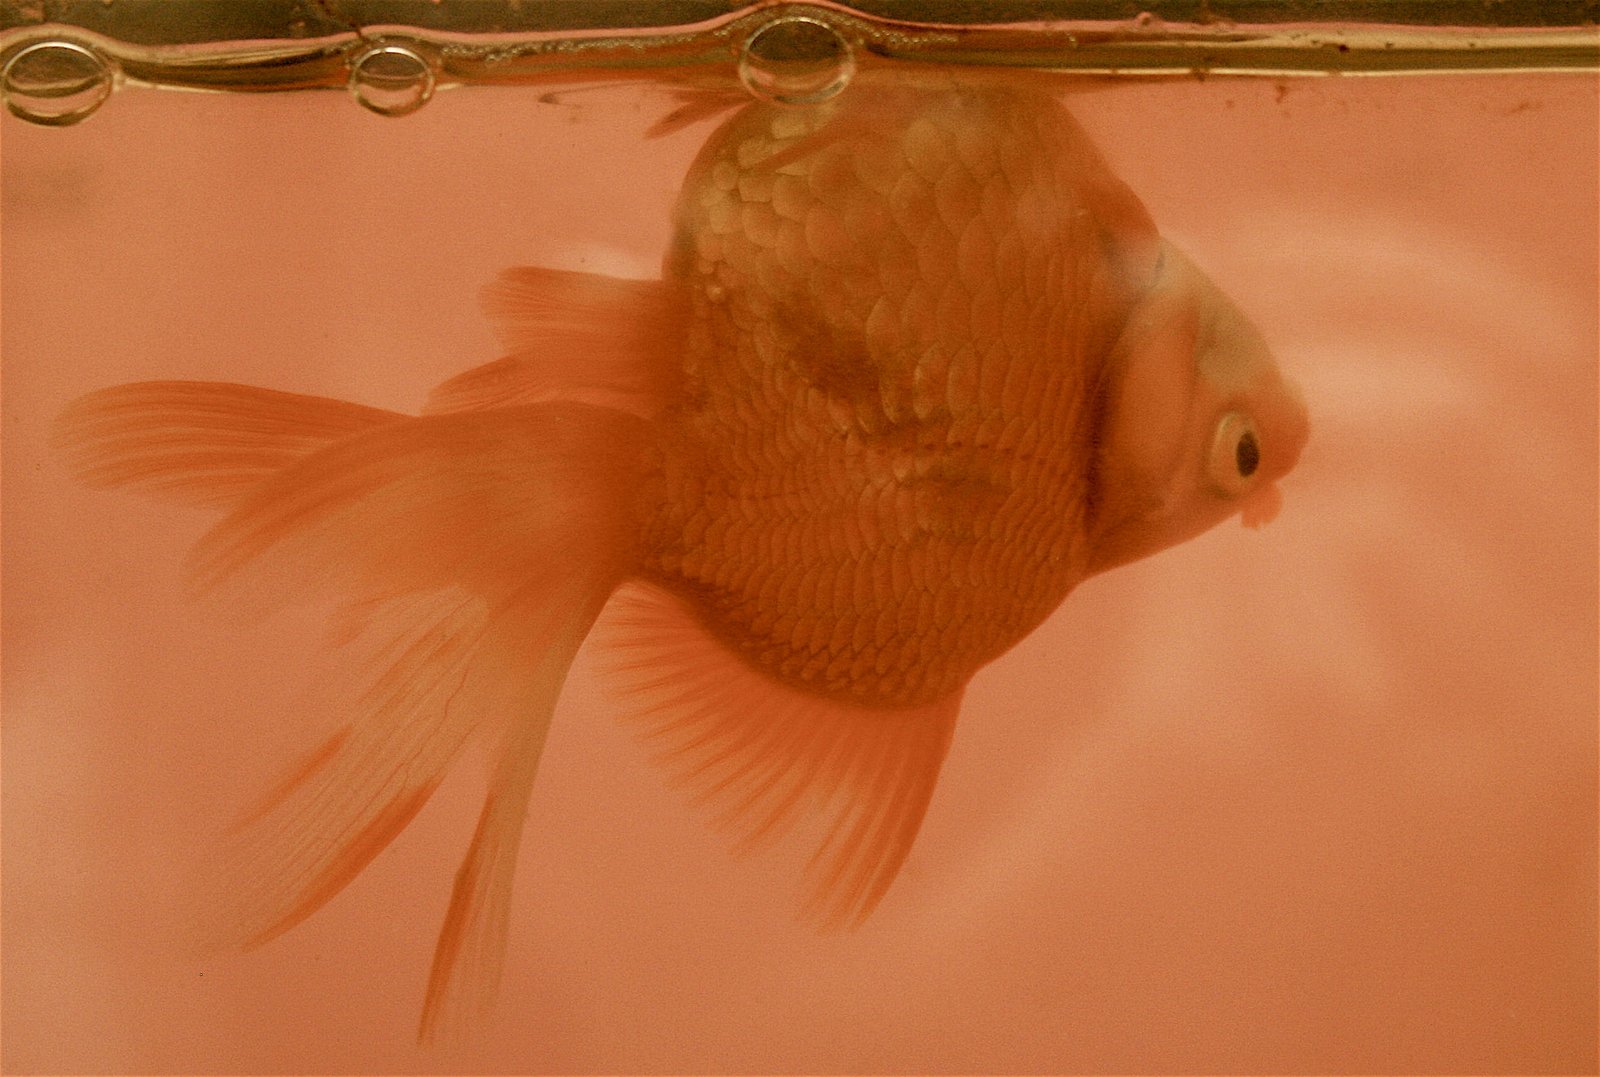 Swim Bladder Disease And Treatment in Aquarium Fish